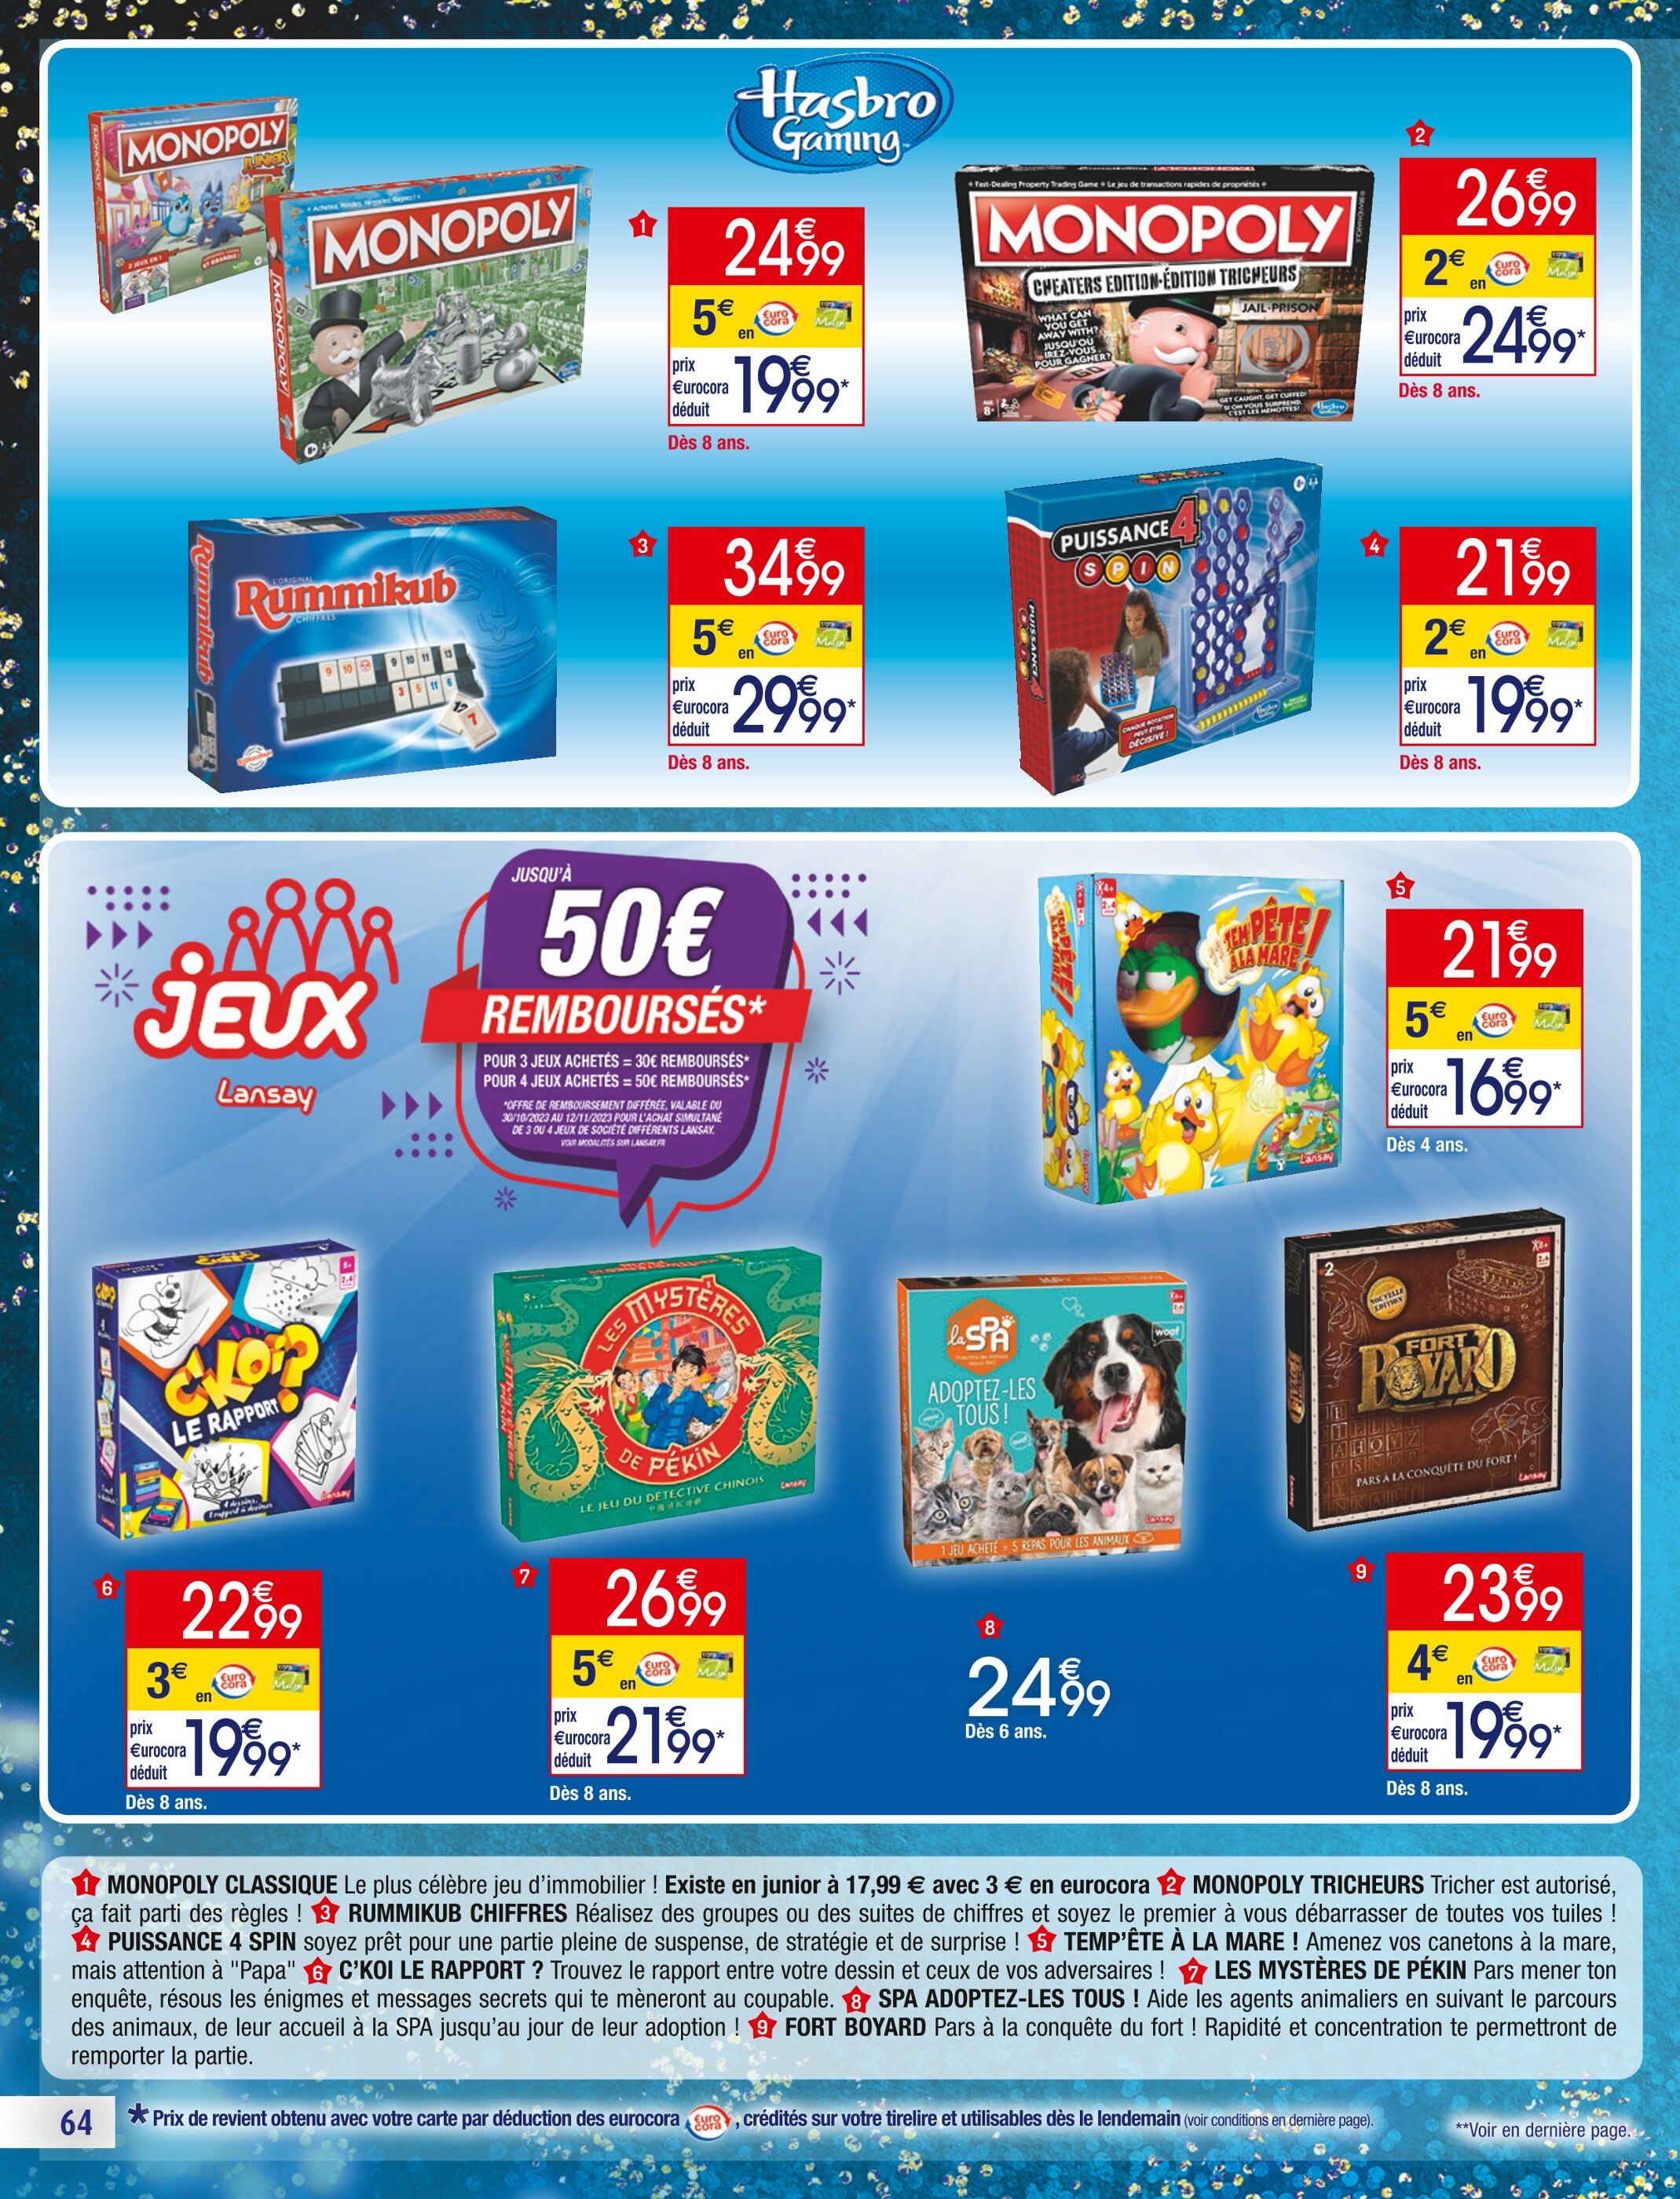 Promo Monopoly Tricheurs chez Auchan